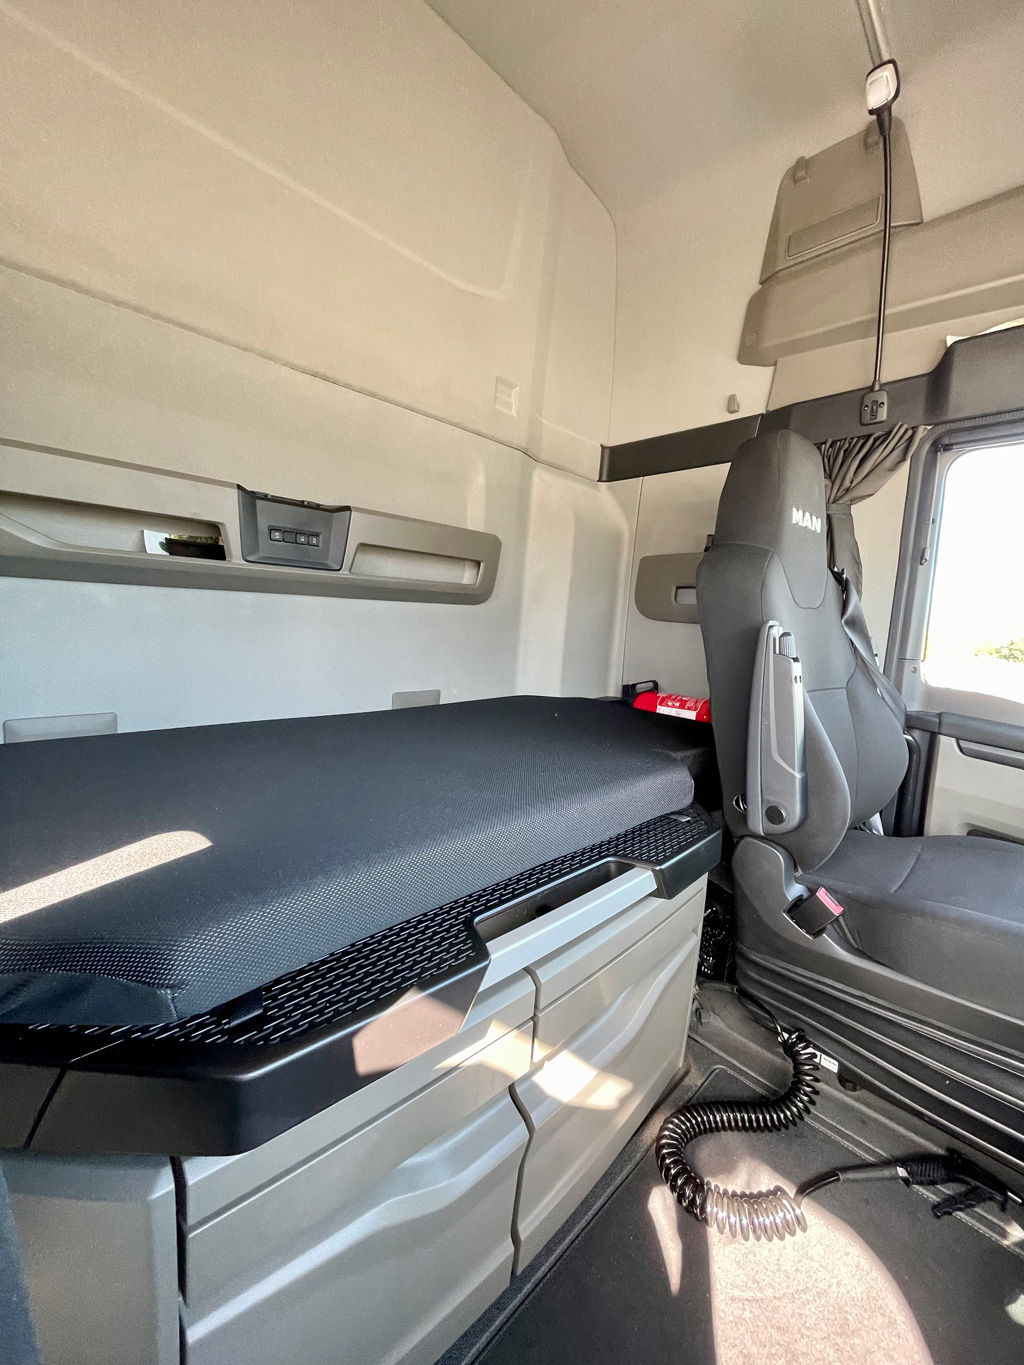 camion Vitadis / intérieur cabine banquette lit couchette confortable